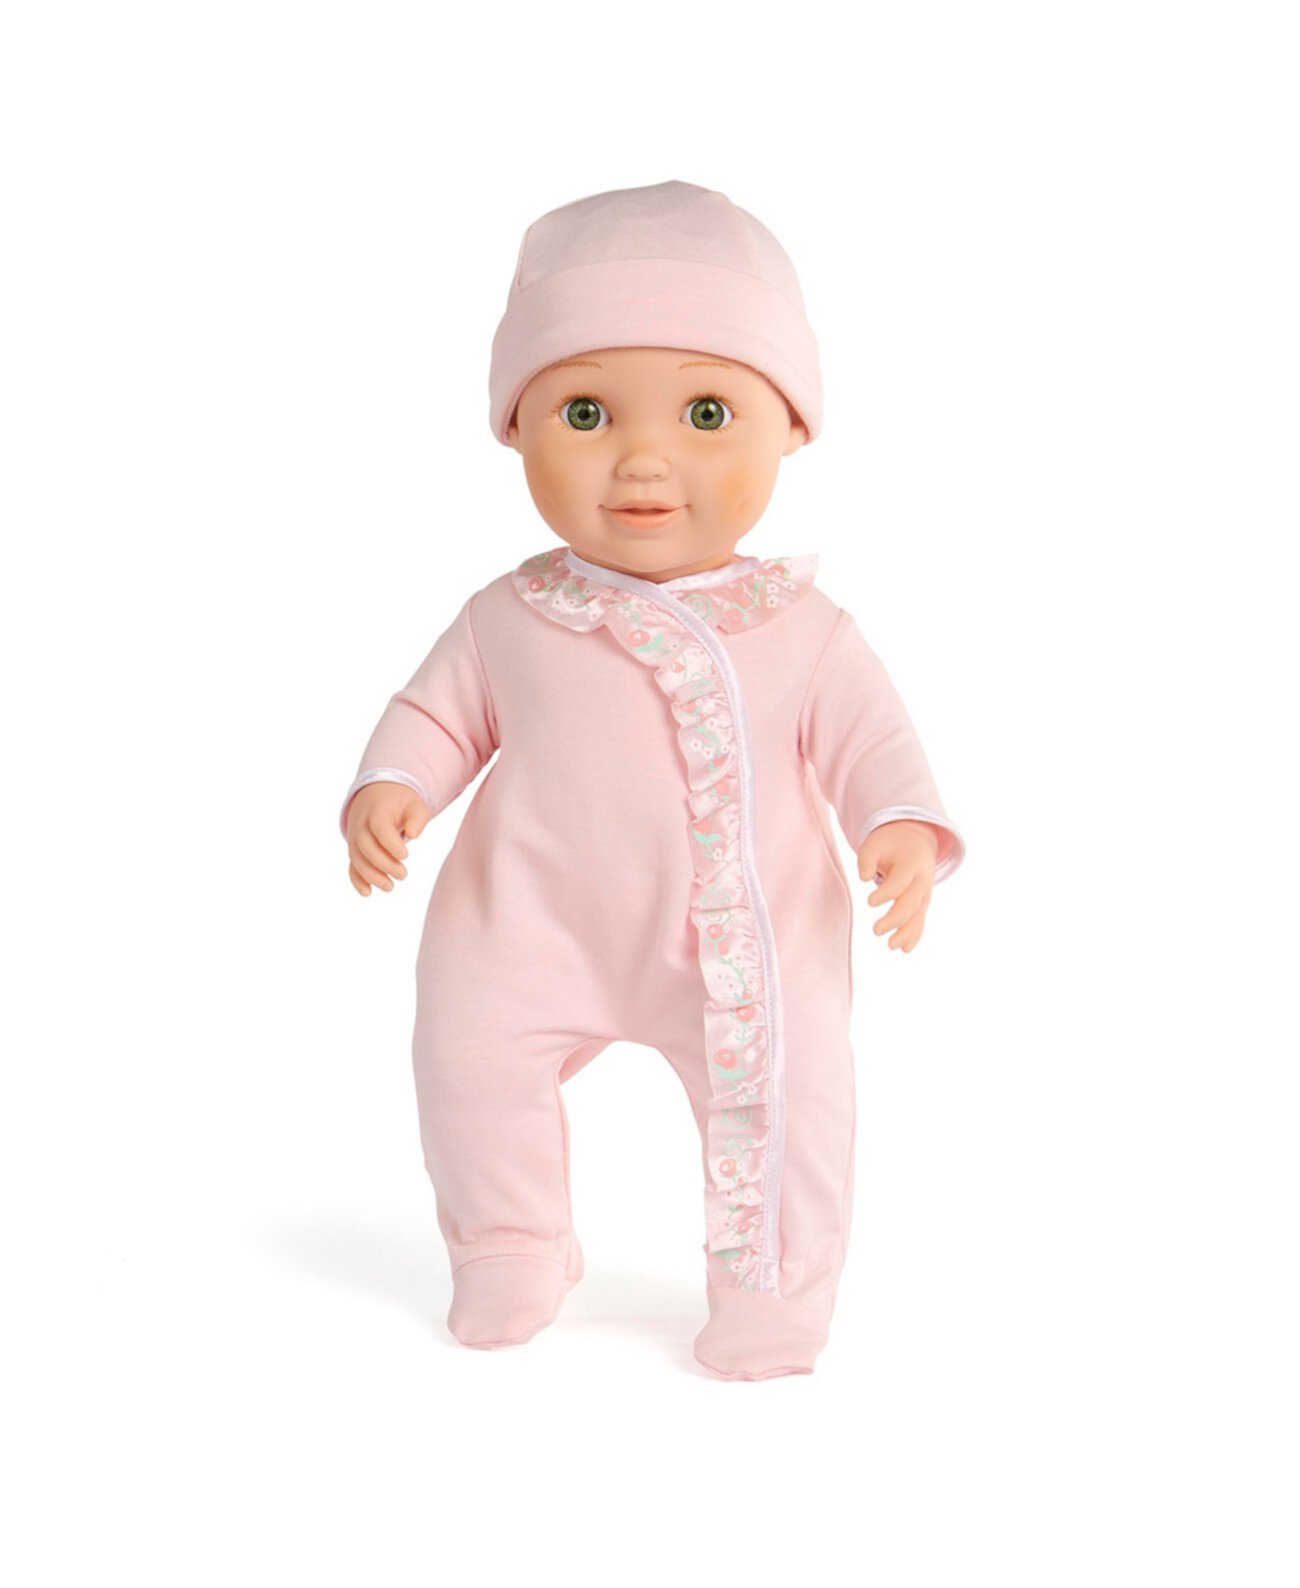 Детская кукла Baby So Sweet в розовом костюме, созданная для вас компанией Toys R Us You & Me